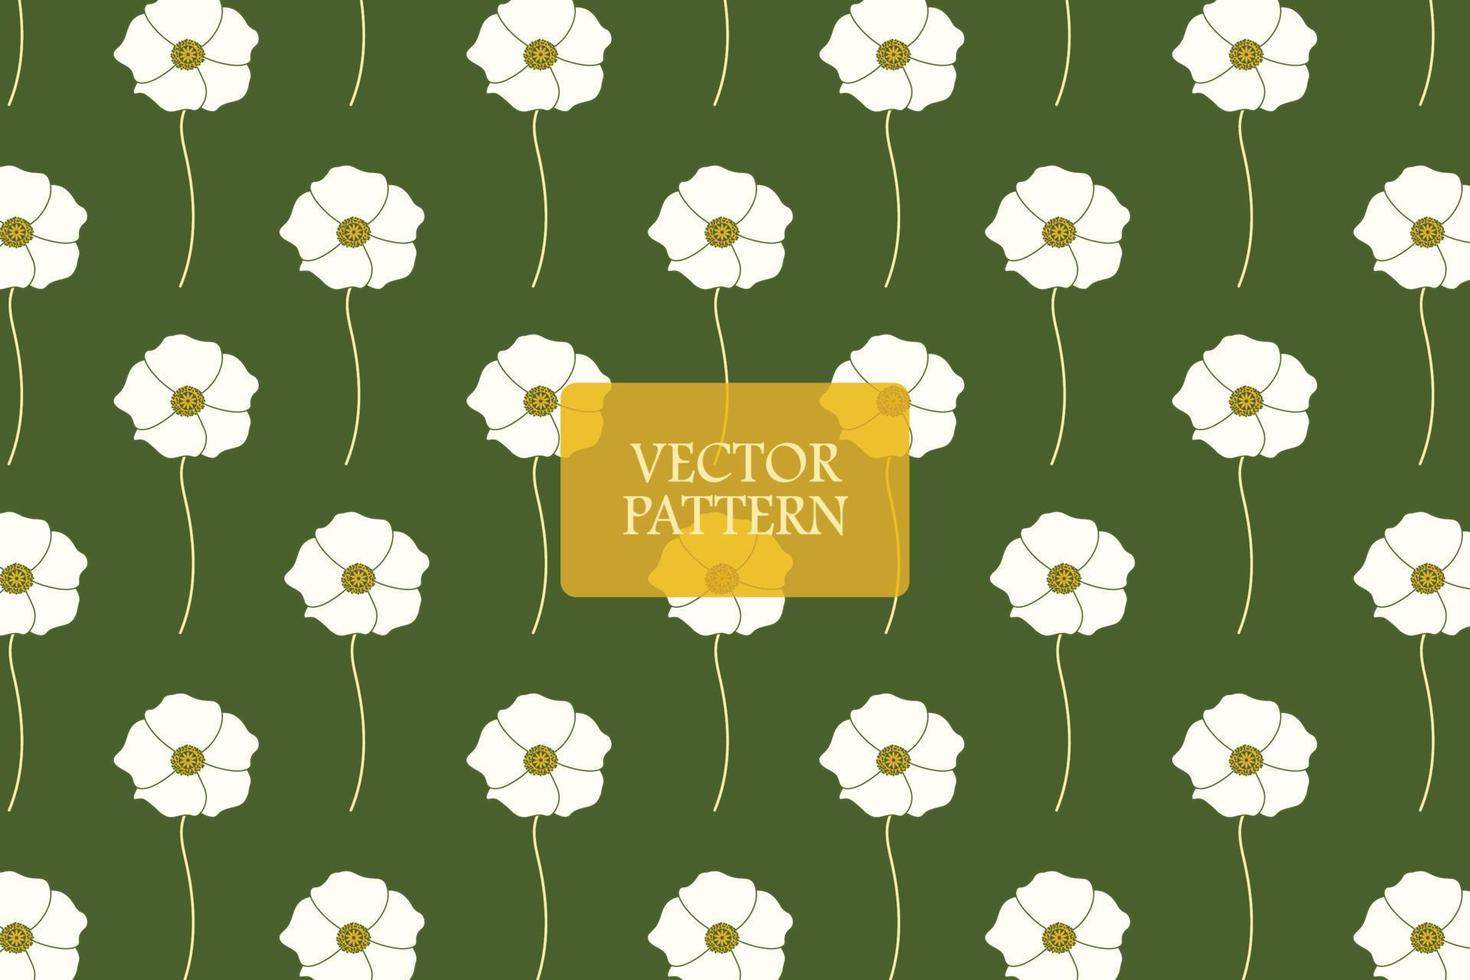 wit papaver bloem groen achtergrond abstract bloemen naadloos herhaling vector patroon